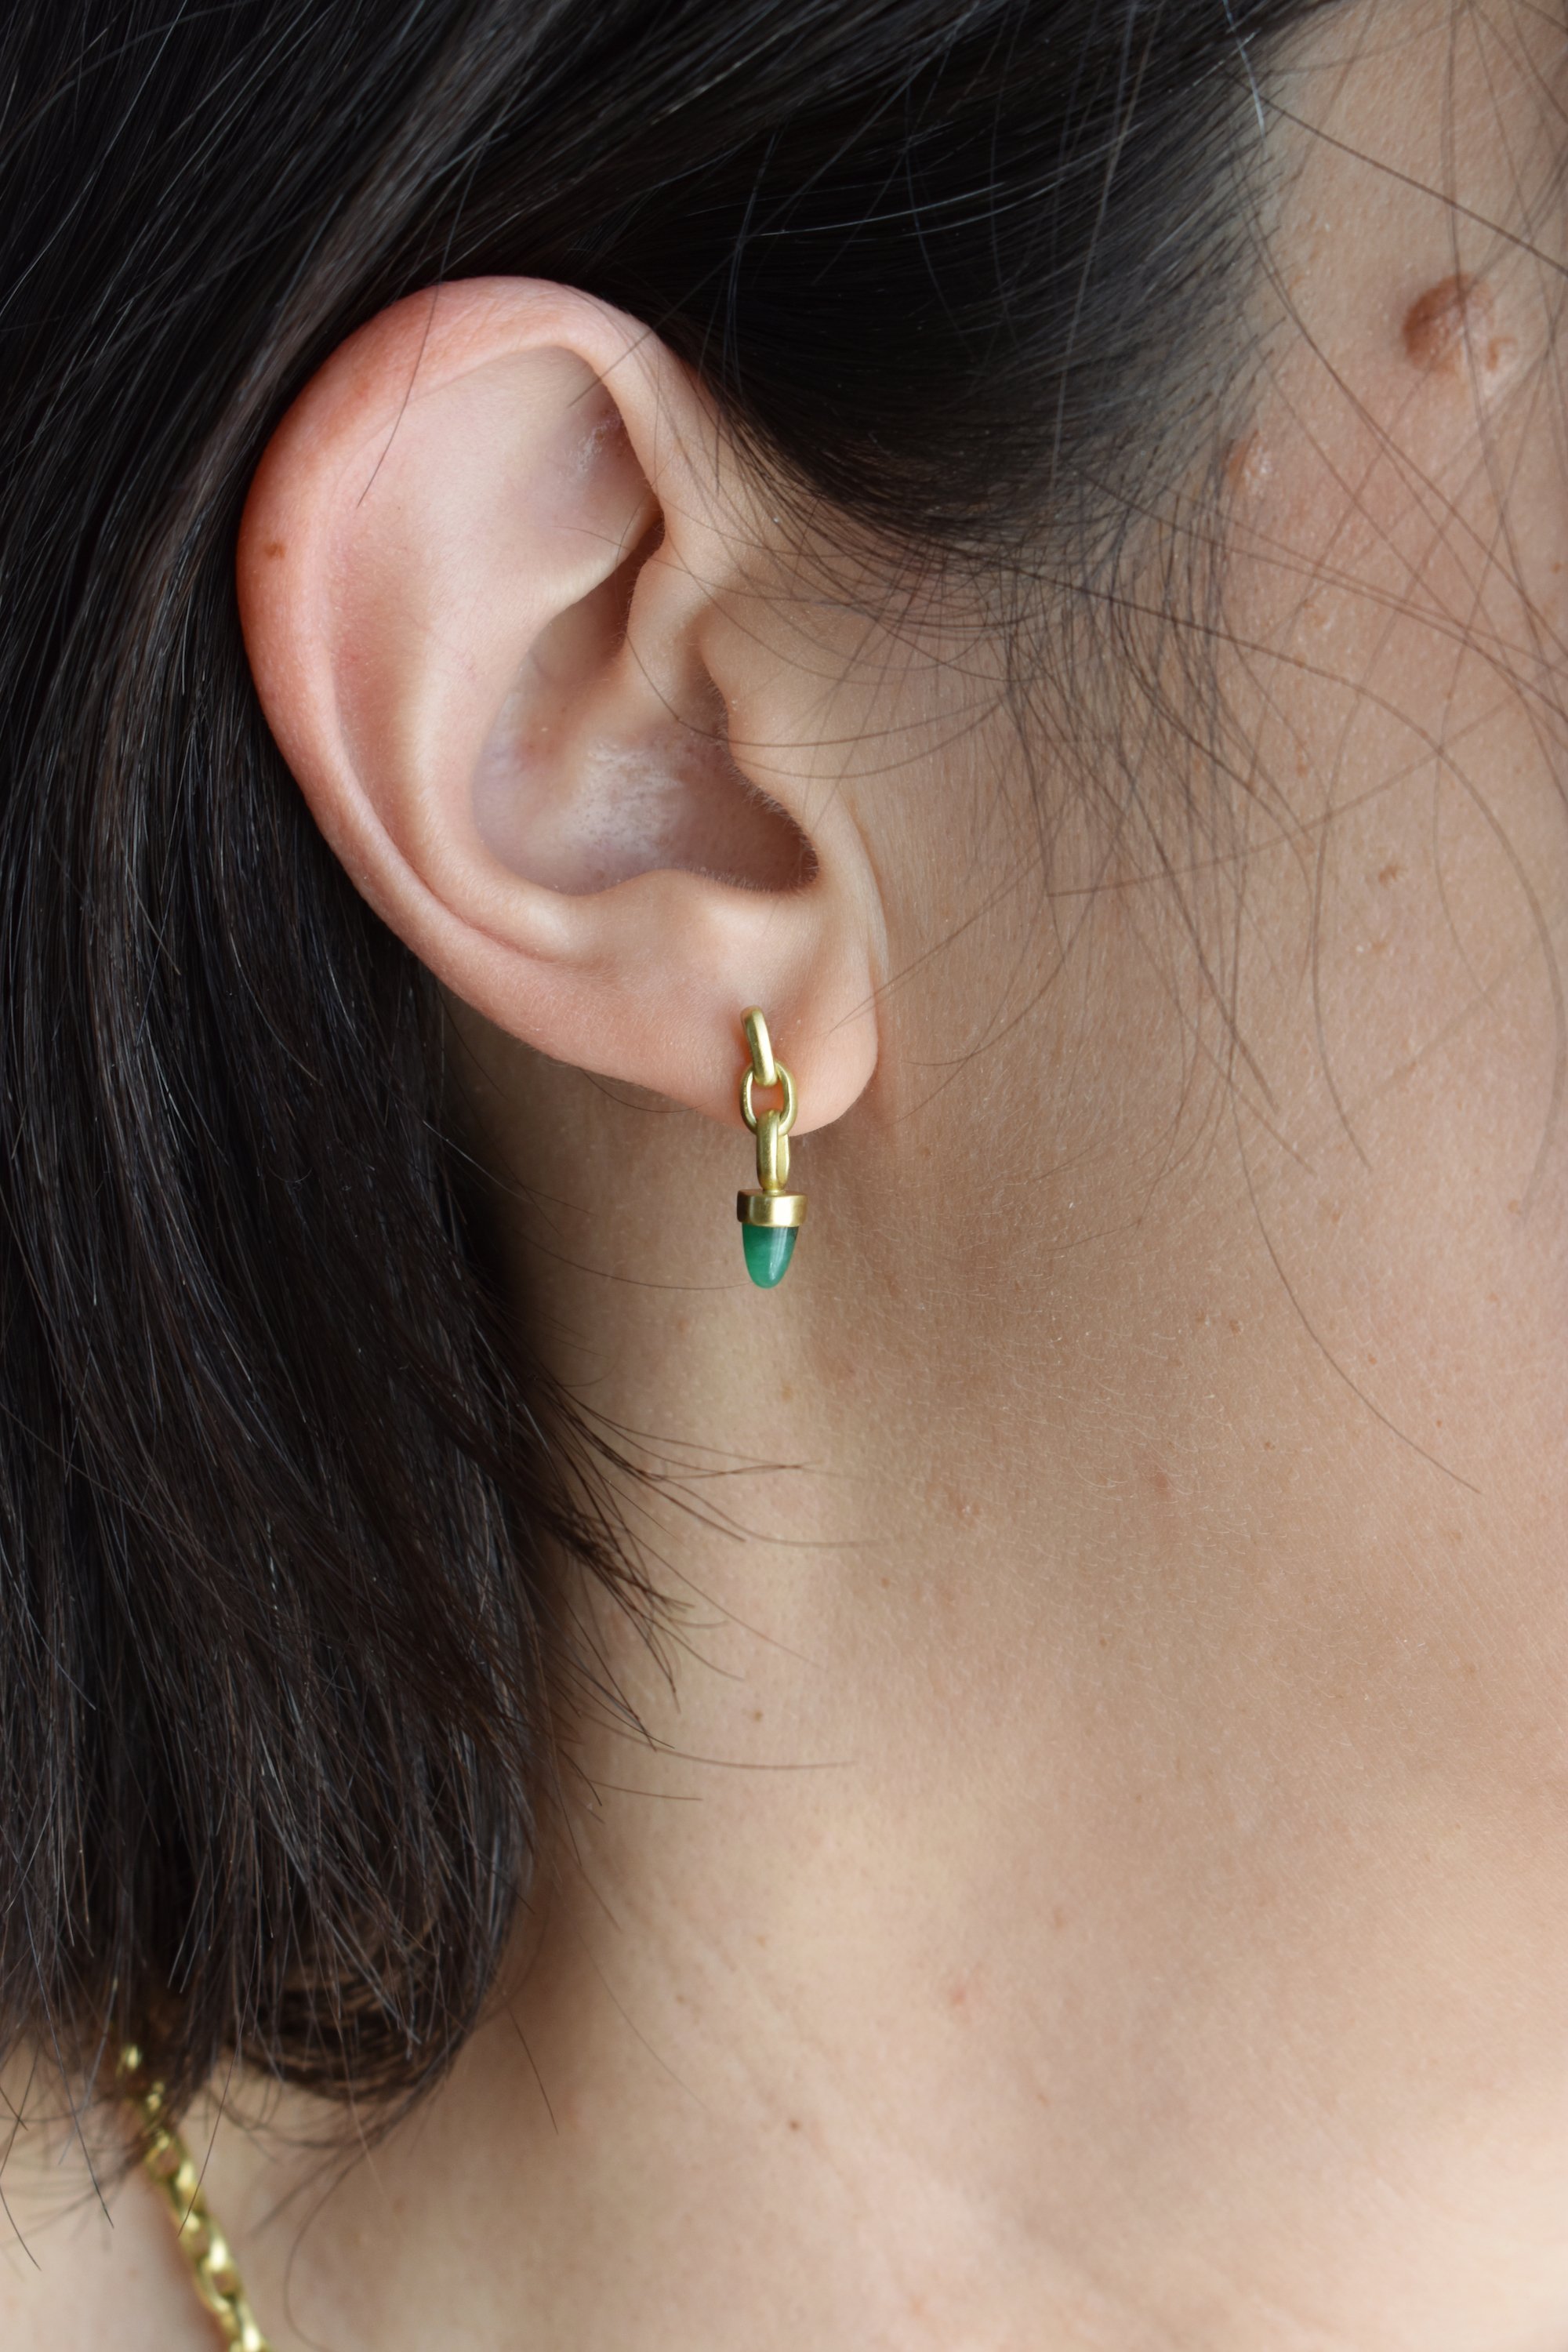 emerald bullet earrings copy.JPG